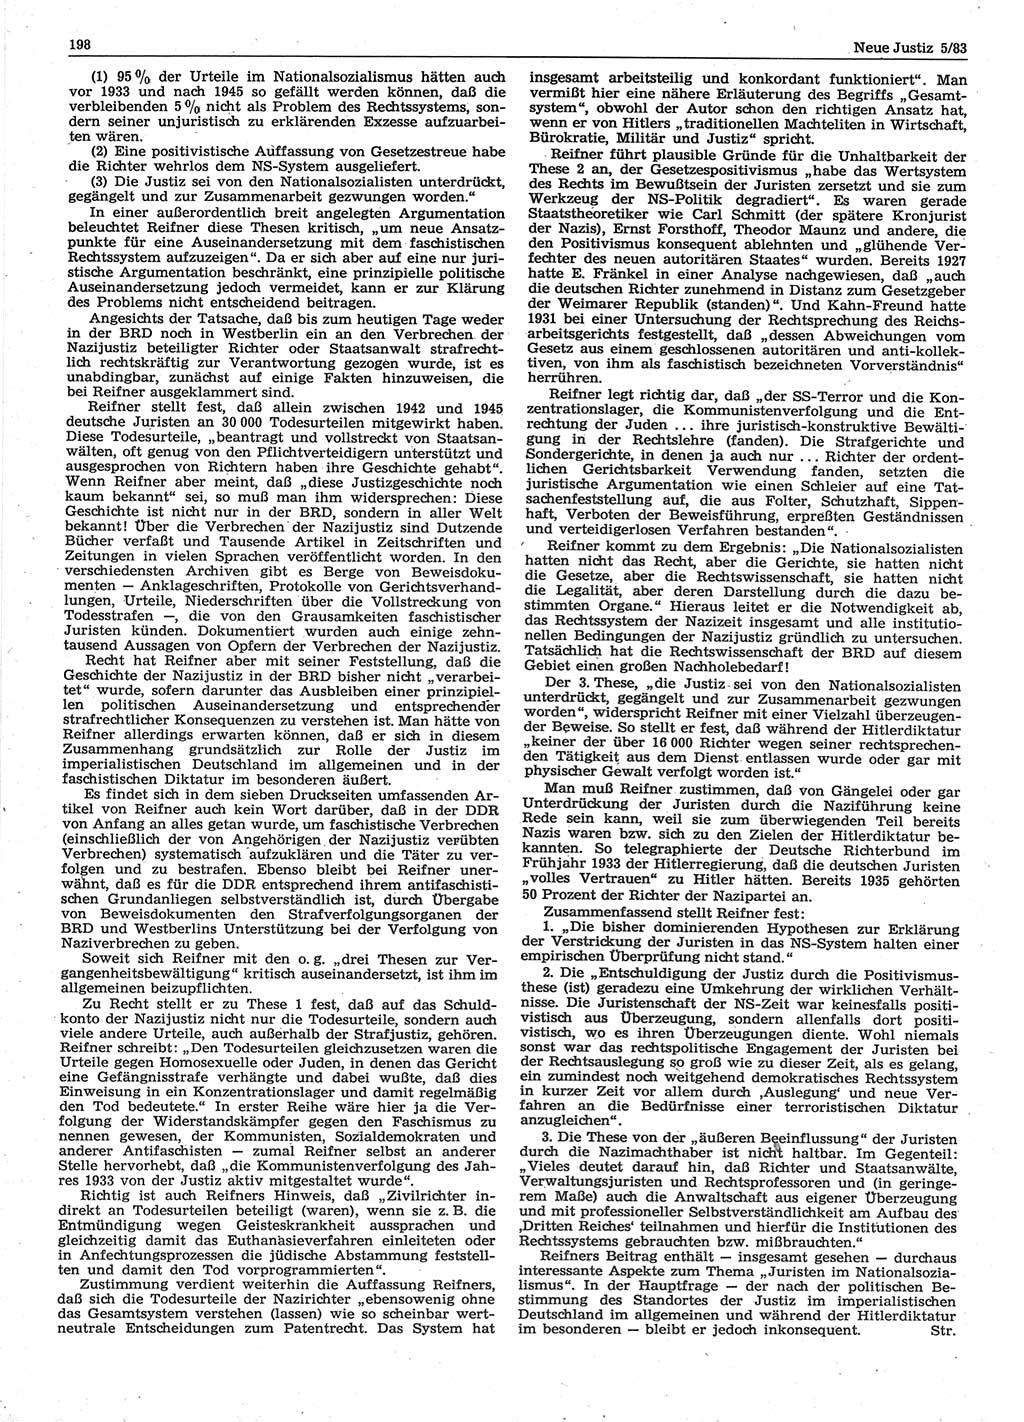 Neue Justiz (NJ), Zeitschrift für sozialistisches Recht und Gesetzlichkeit [Deutsche Demokratische Republik (DDR)], 37. Jahrgang 1983, Seite 198 (NJ DDR 1983, S. 198)